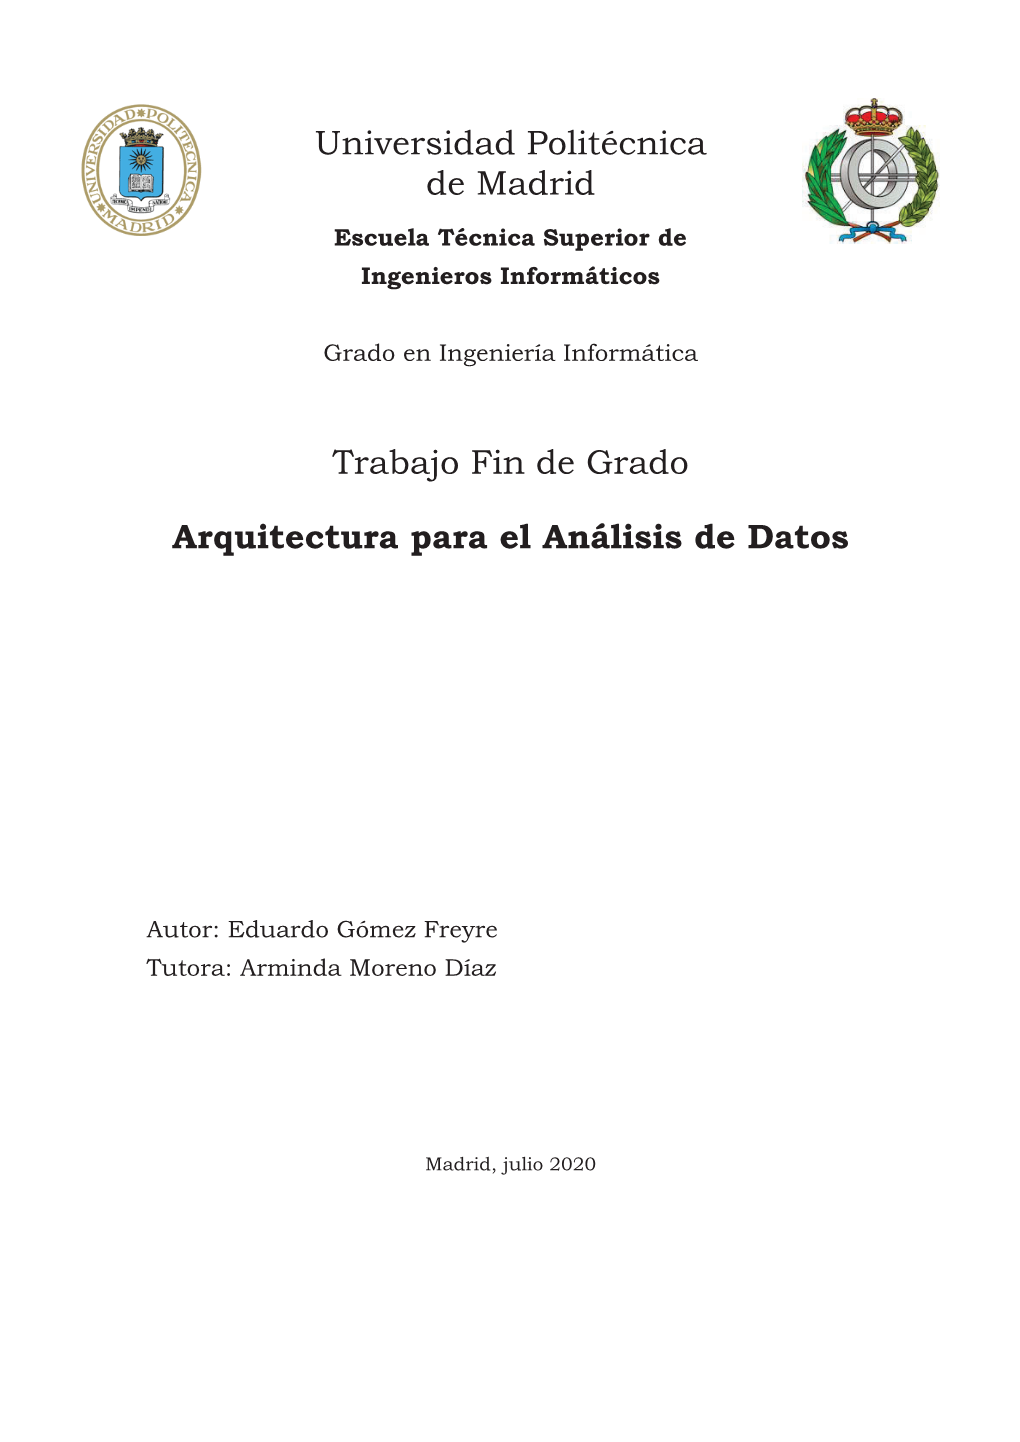 Universidad Politécnica De Madrid Trabajo Fin De Grado Arquitectura Para El Análisis De Datos